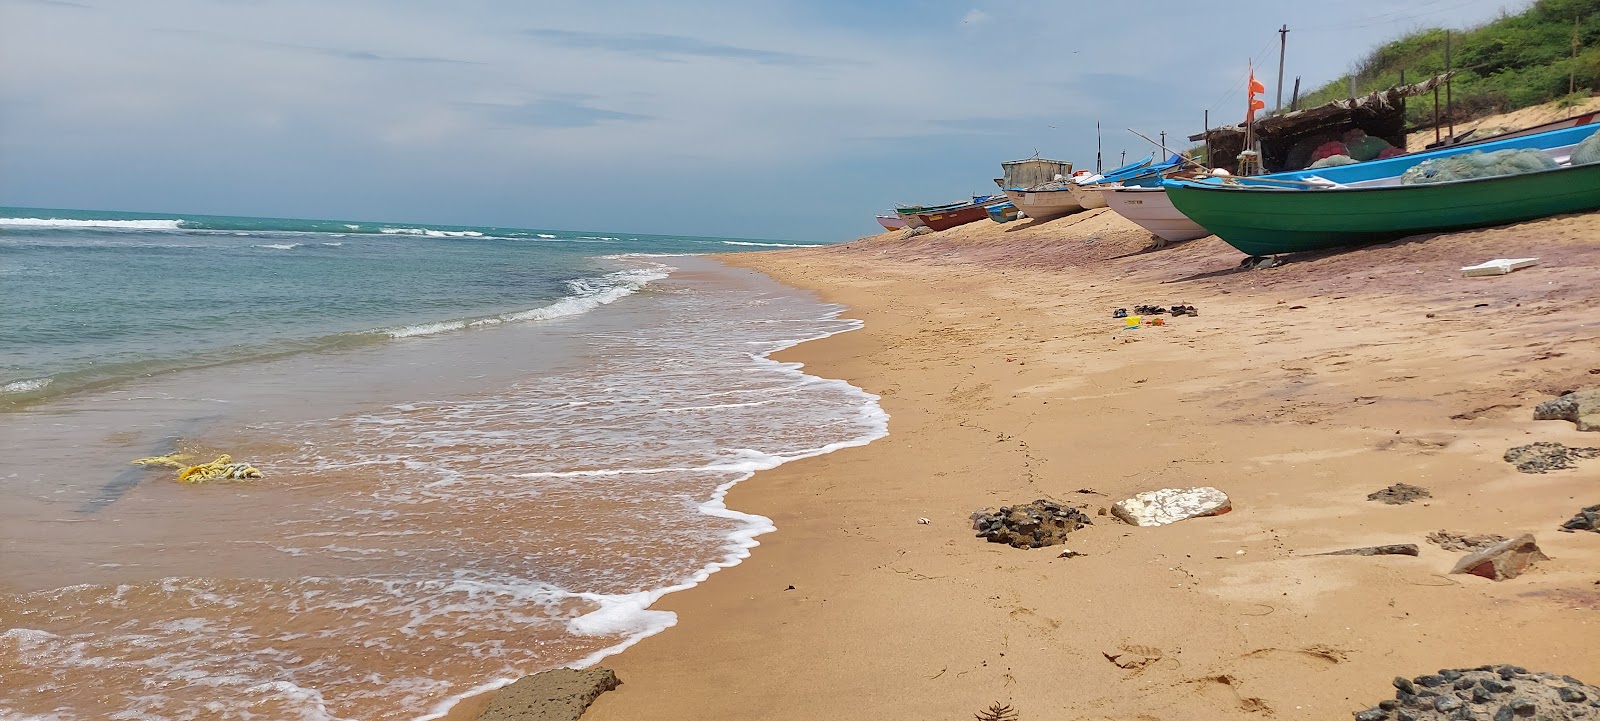 Zdjęcie Kooduthalai beach z powierzchnią jasny piasek